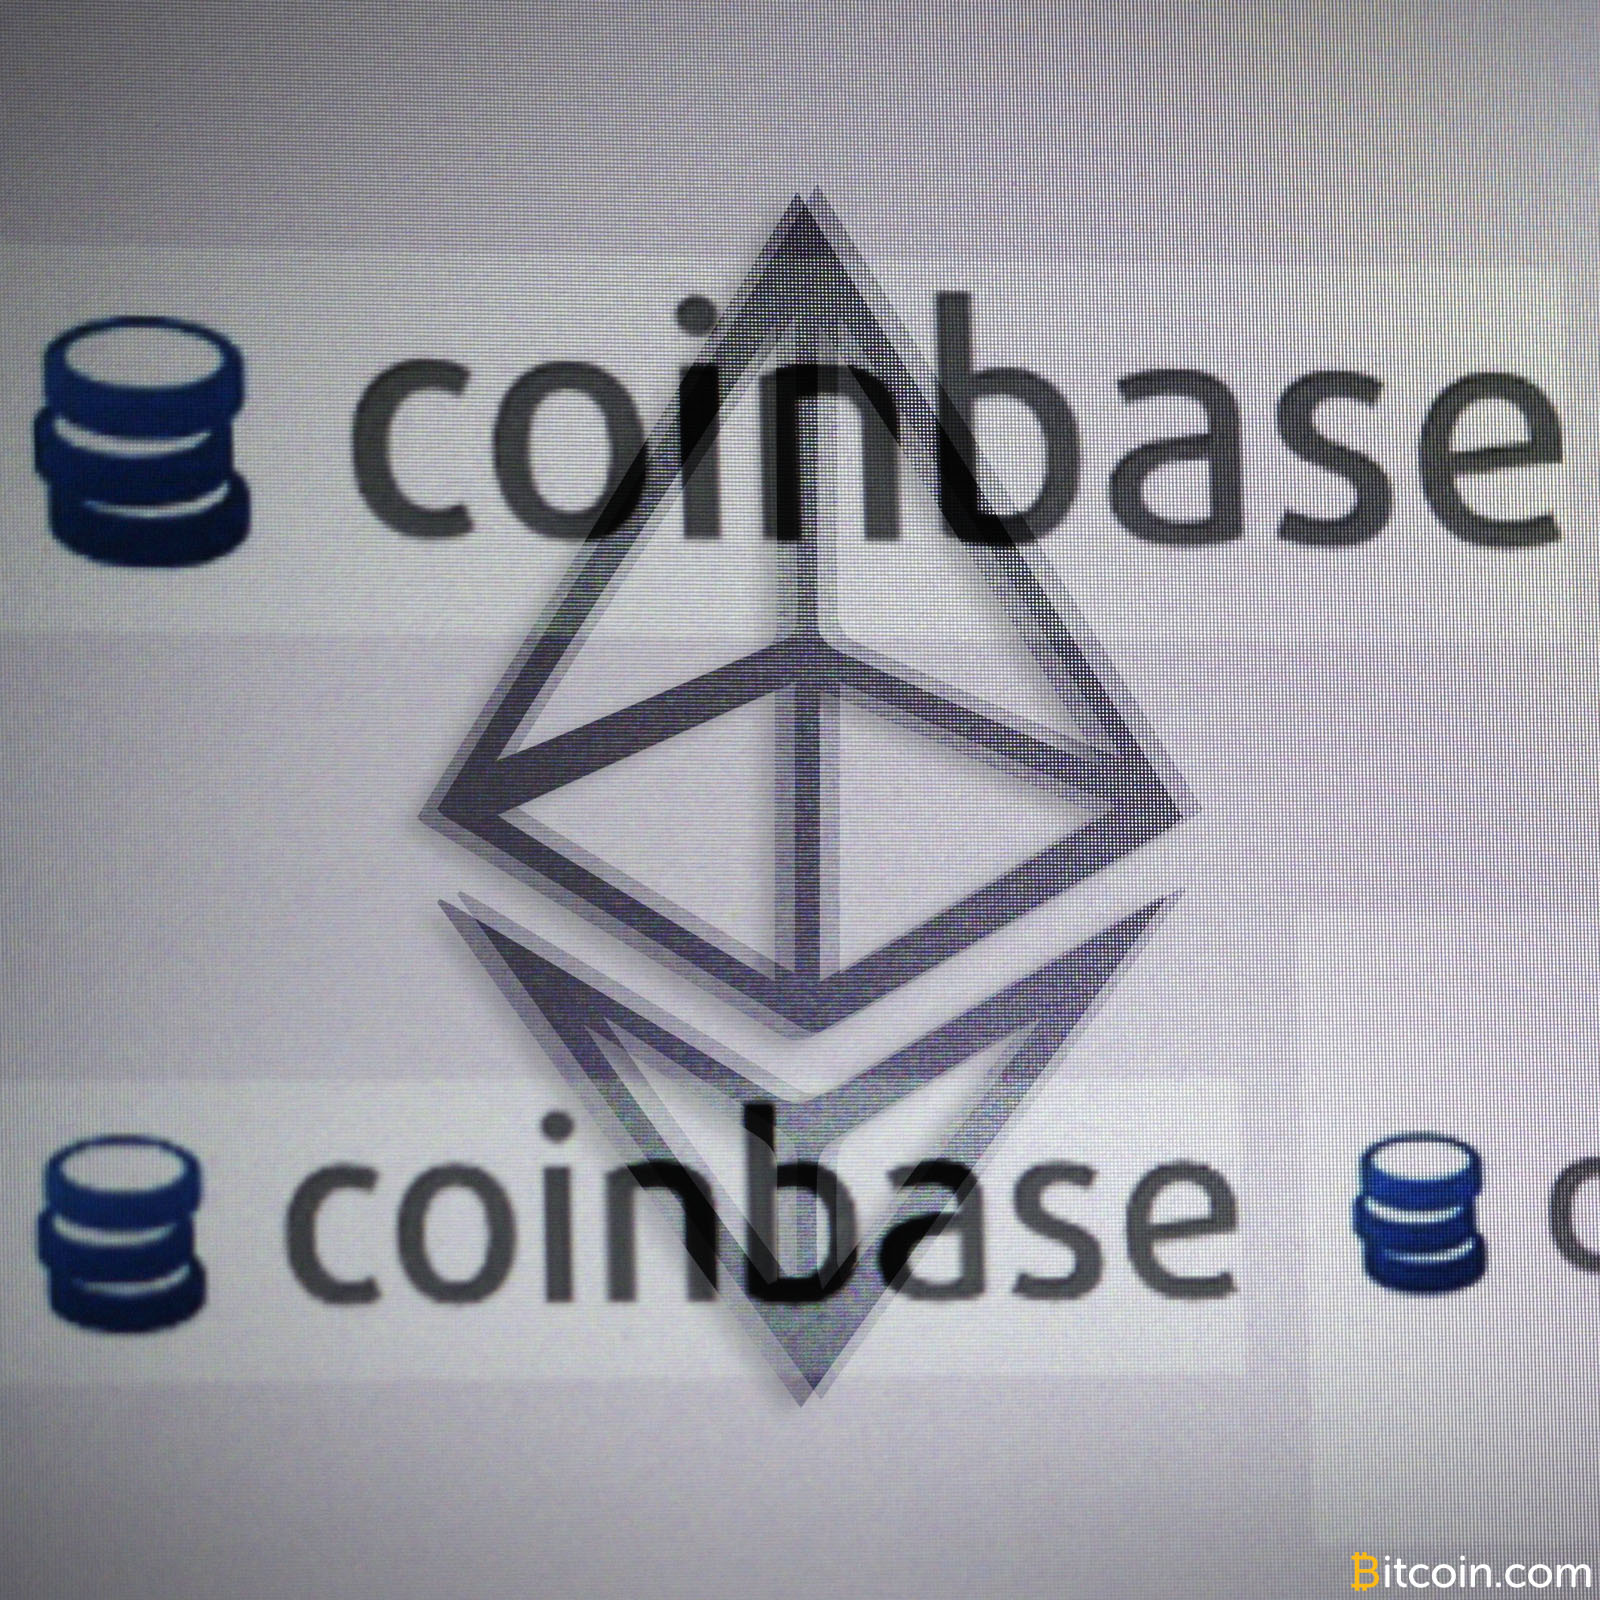 Coinbase Under Investigation for Ethereum 'Flash Crash'